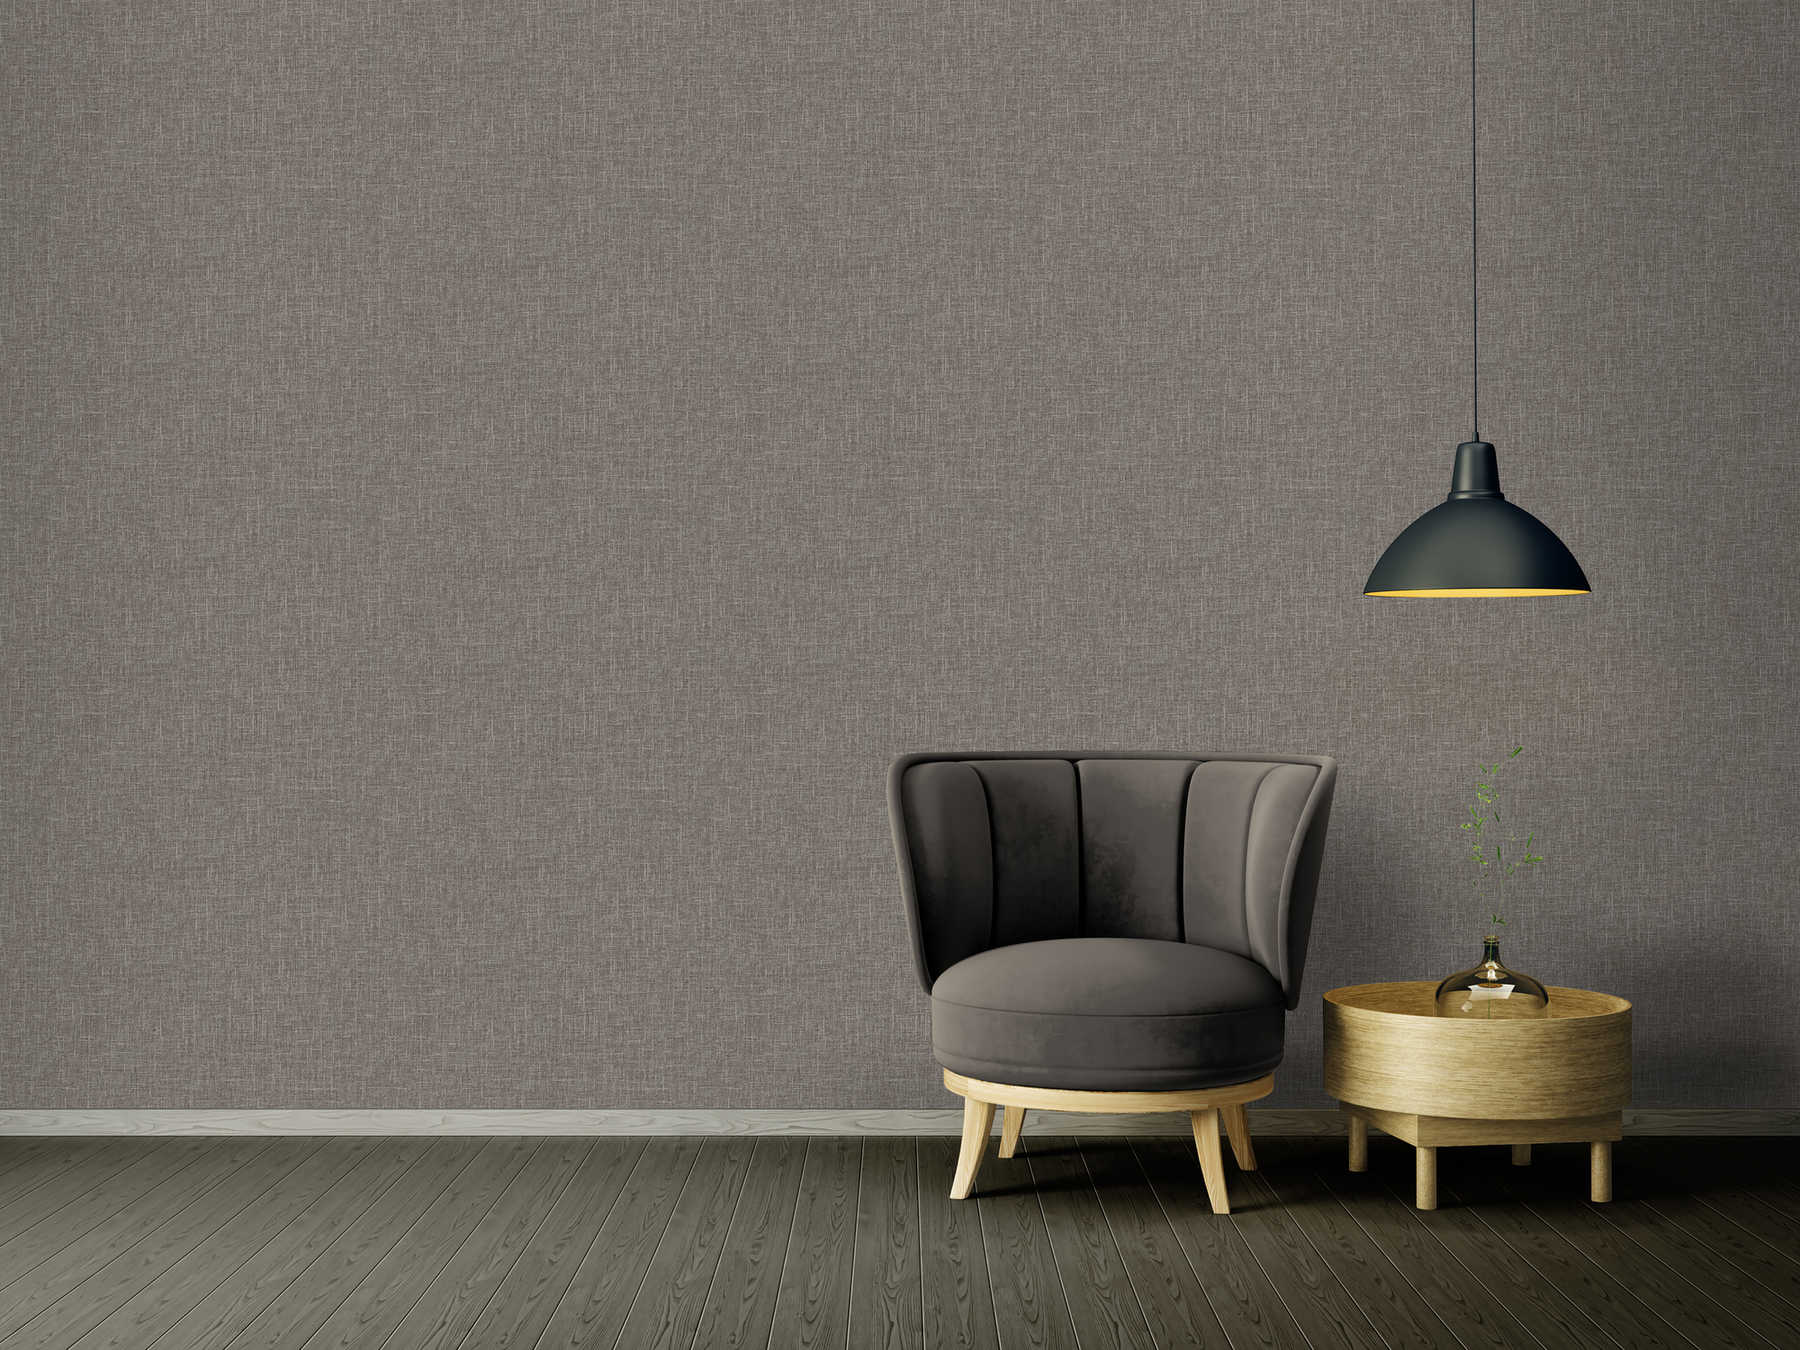             VERSACE plain wallpaper - grey mottled in linen look - grey
        